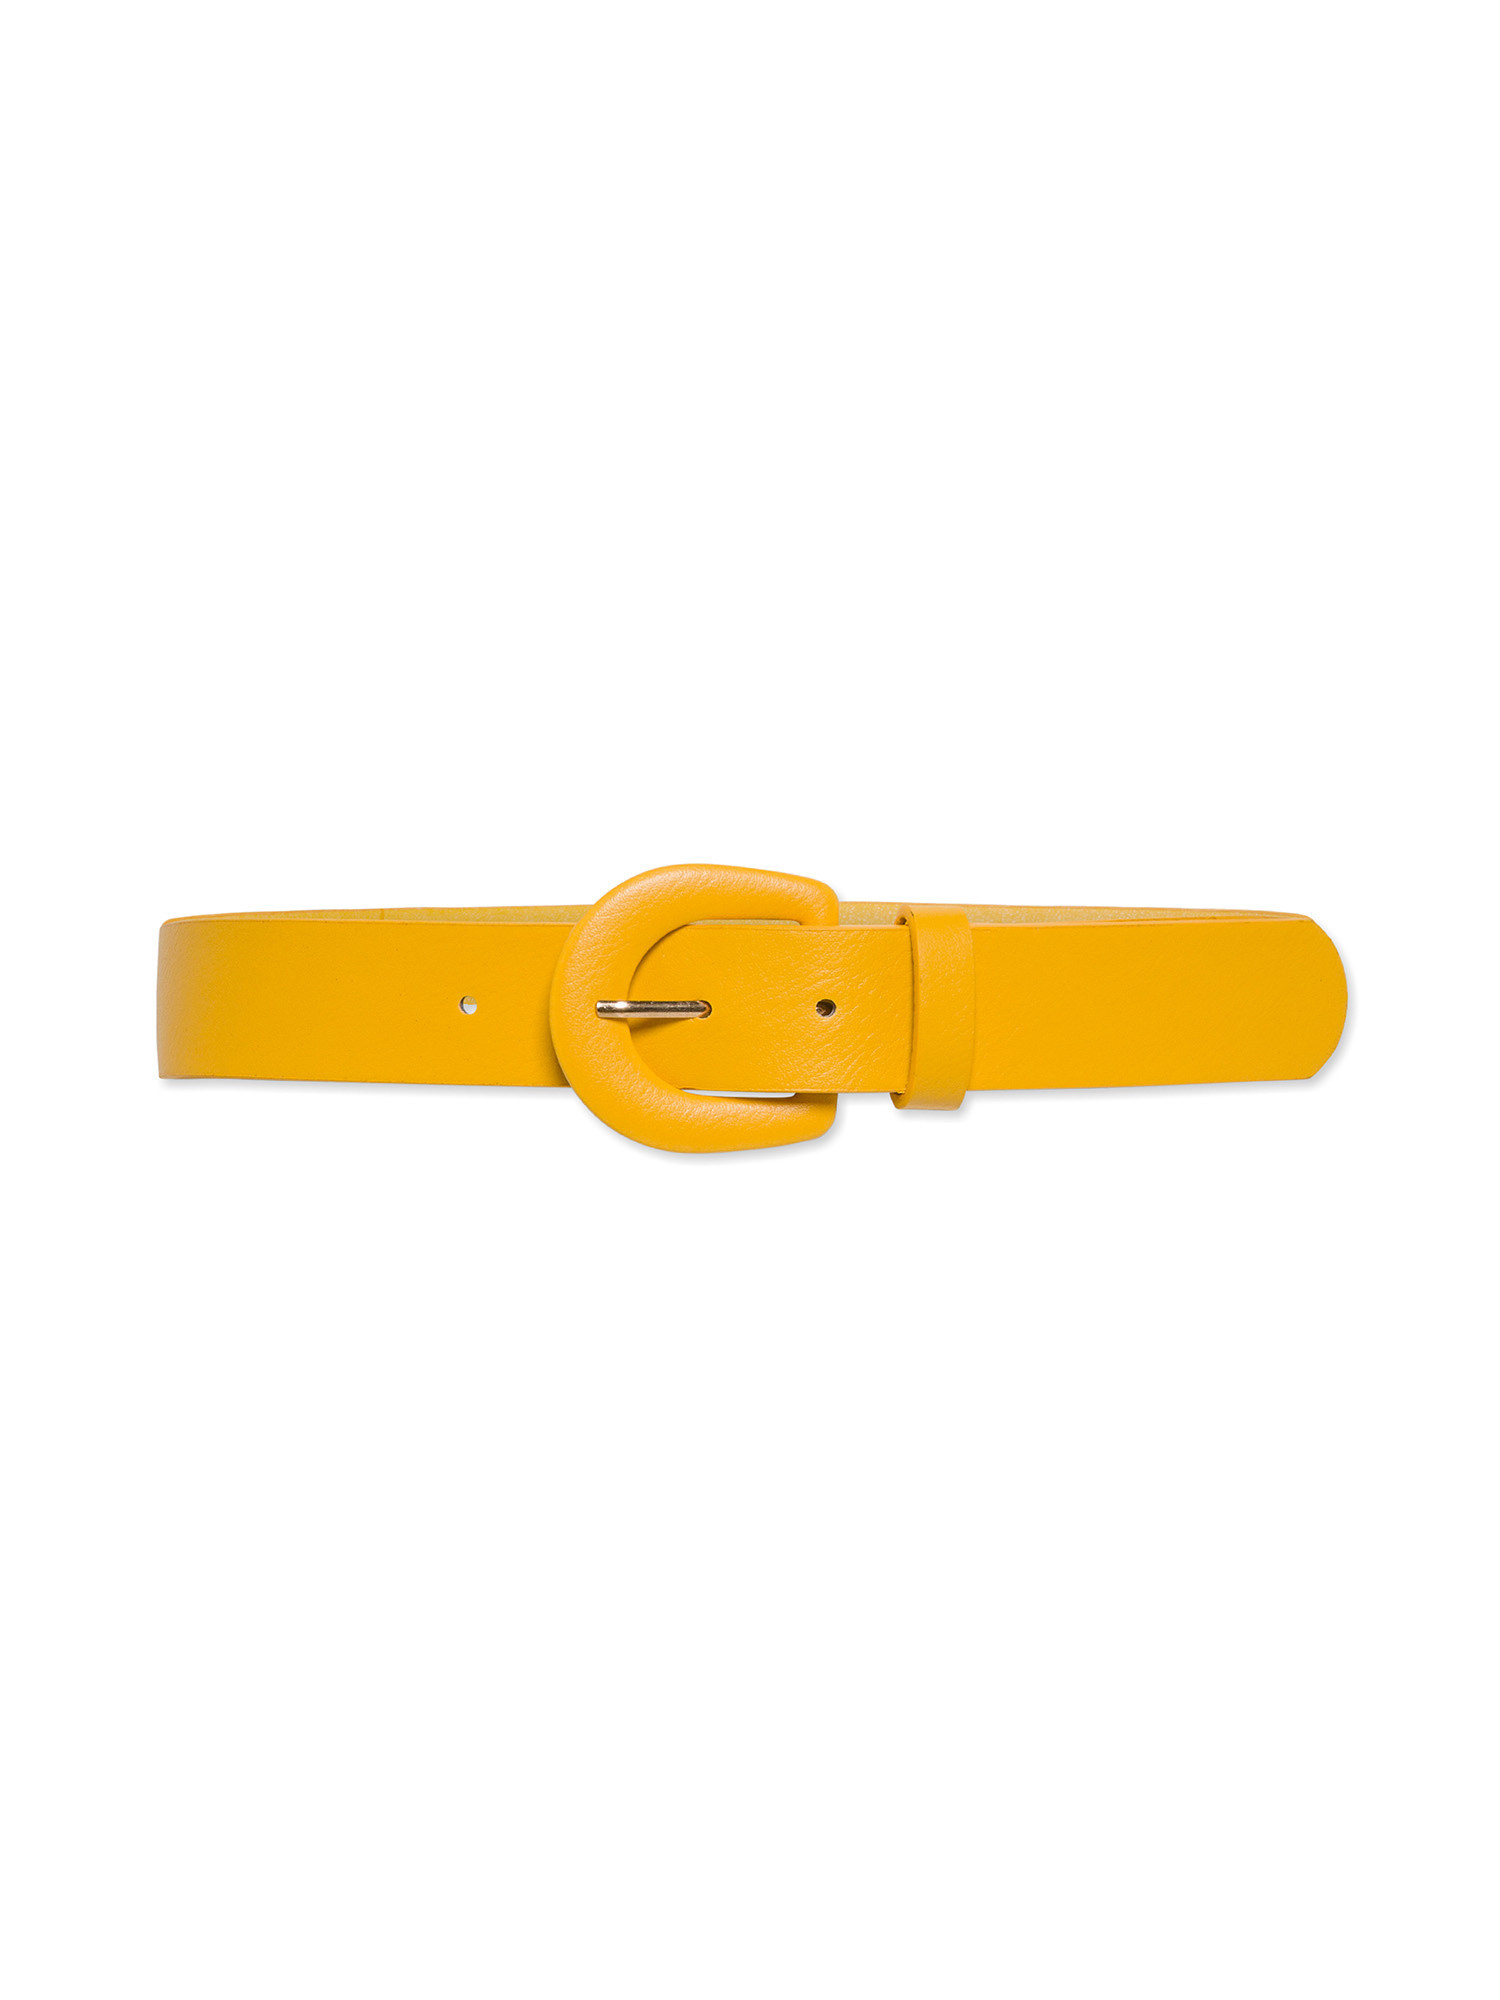 Koan - Belt, Yellow, large image number 1